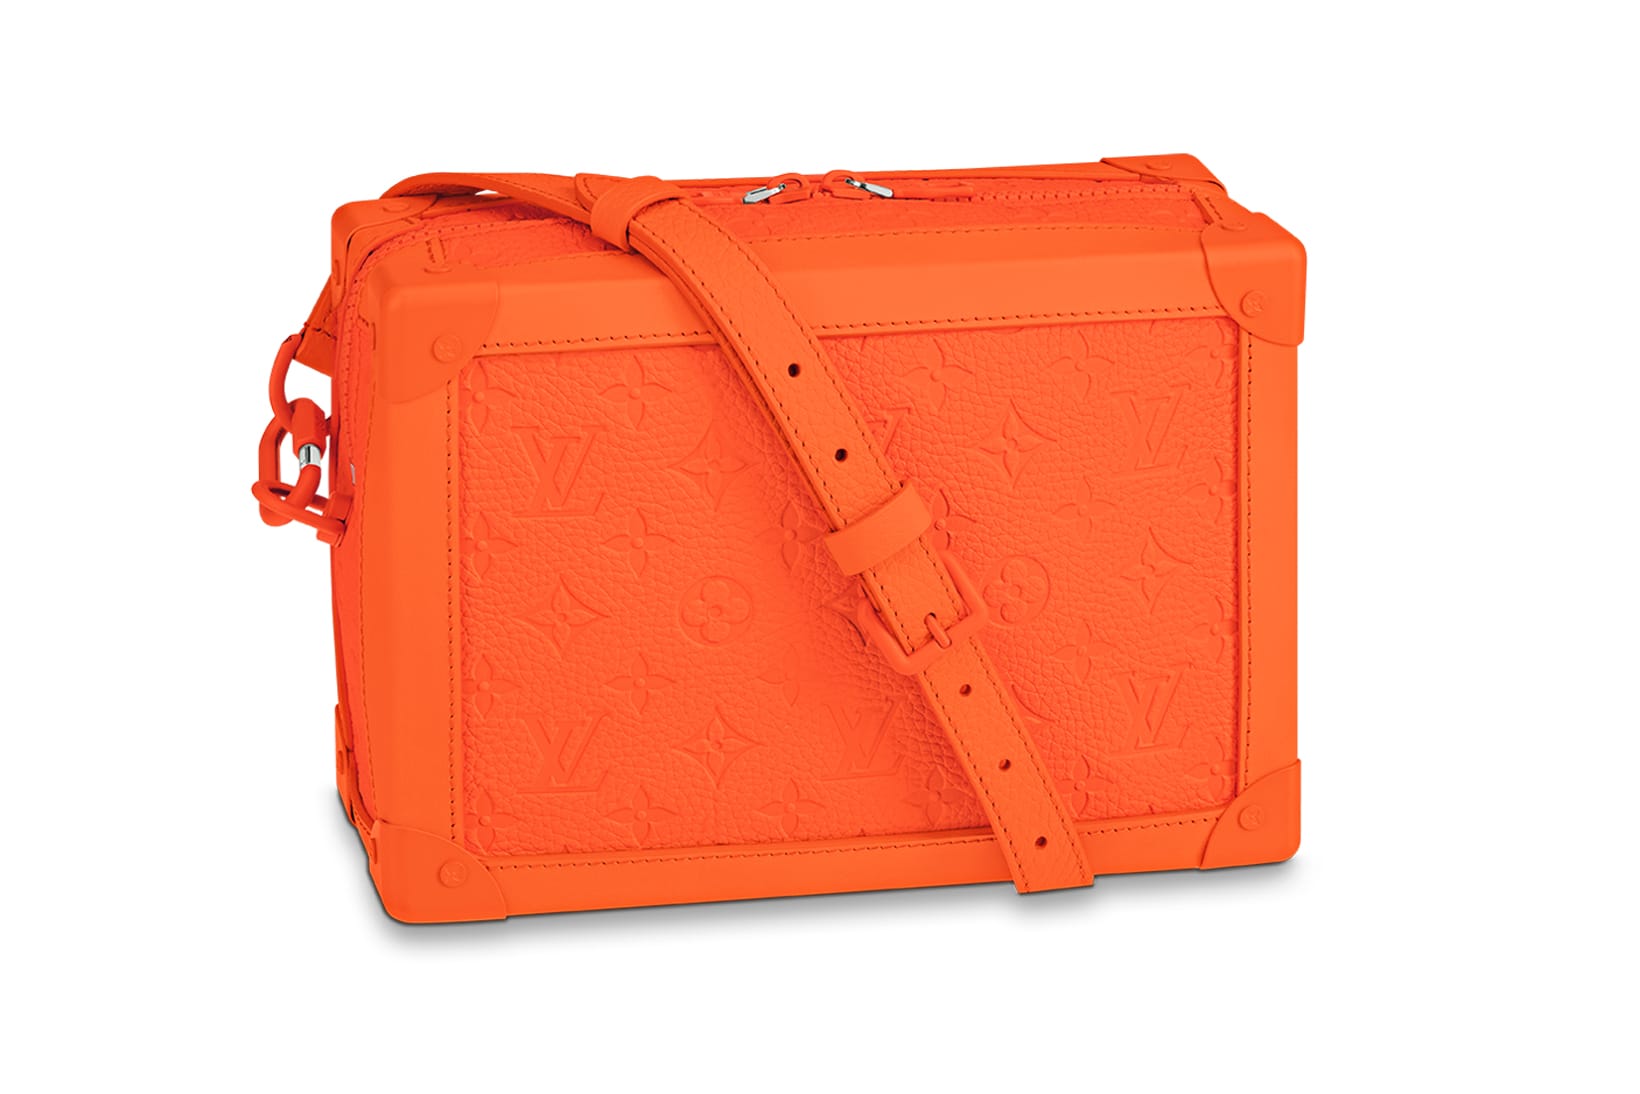 Louis Vuitton Orange amp Blue Large Gift  Shopping Bag  eBay